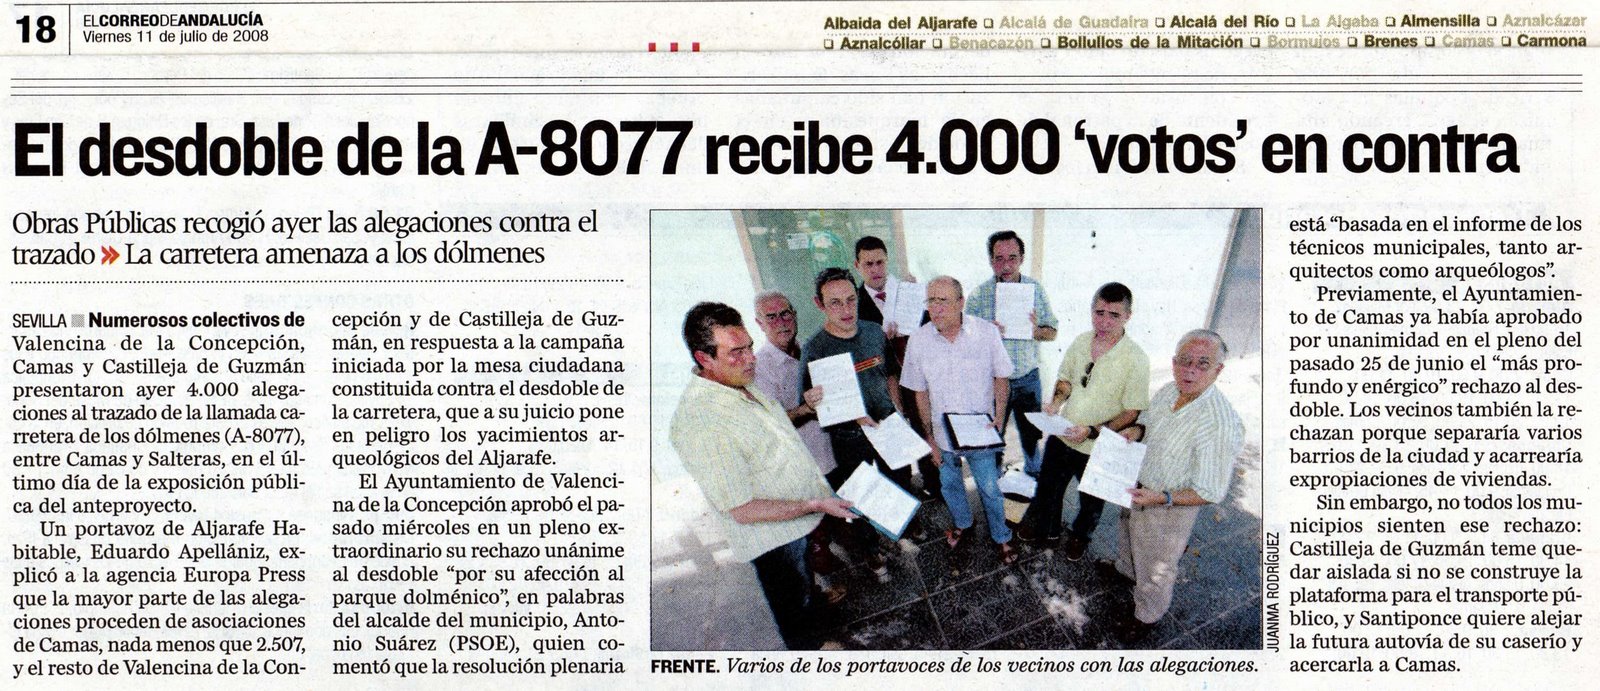 [2008+07+11+CORREO+ANDALUCÃ A+EL+DESDOBLE+DE+LA+A-8077+RECIBE+4000+ALEGACIONES+EN+CONTRA.jpg]